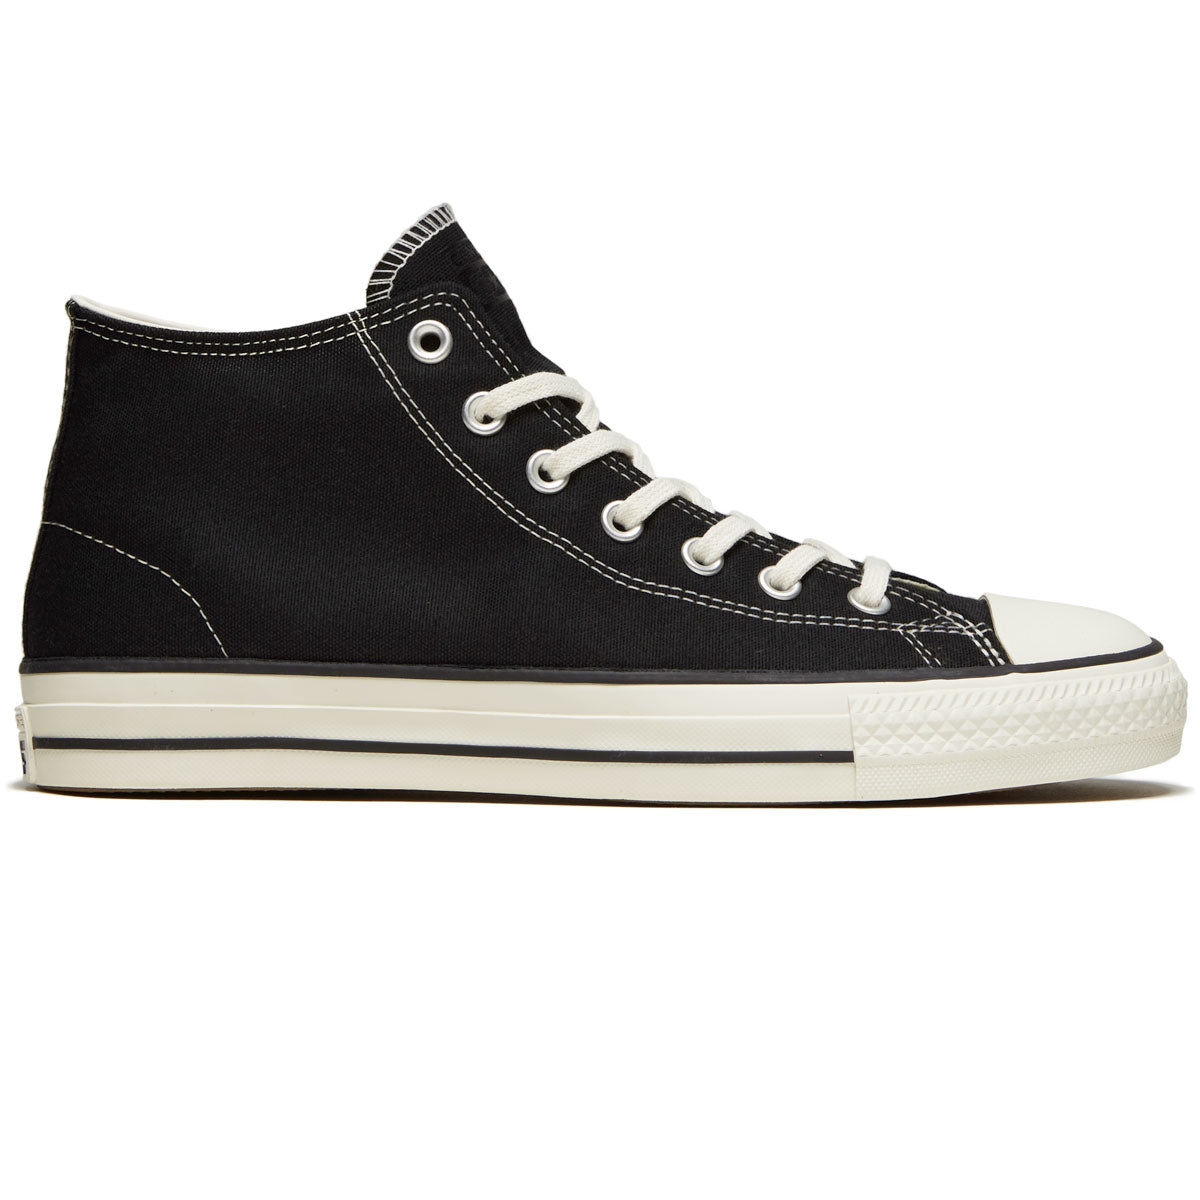 Converse CTAS Pro Mid Shoes - Black/Black/Egret image 1